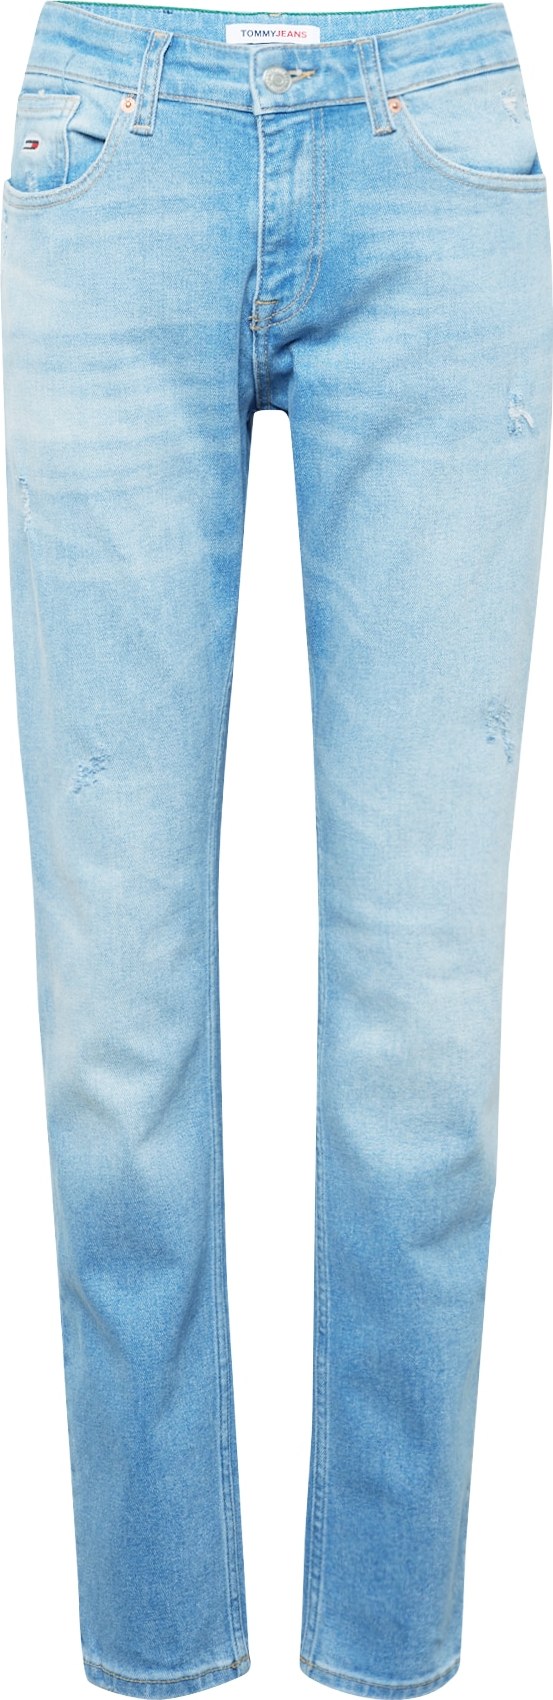 Džíny 'AUSTIN' Tommy Jeans modrá džínovina